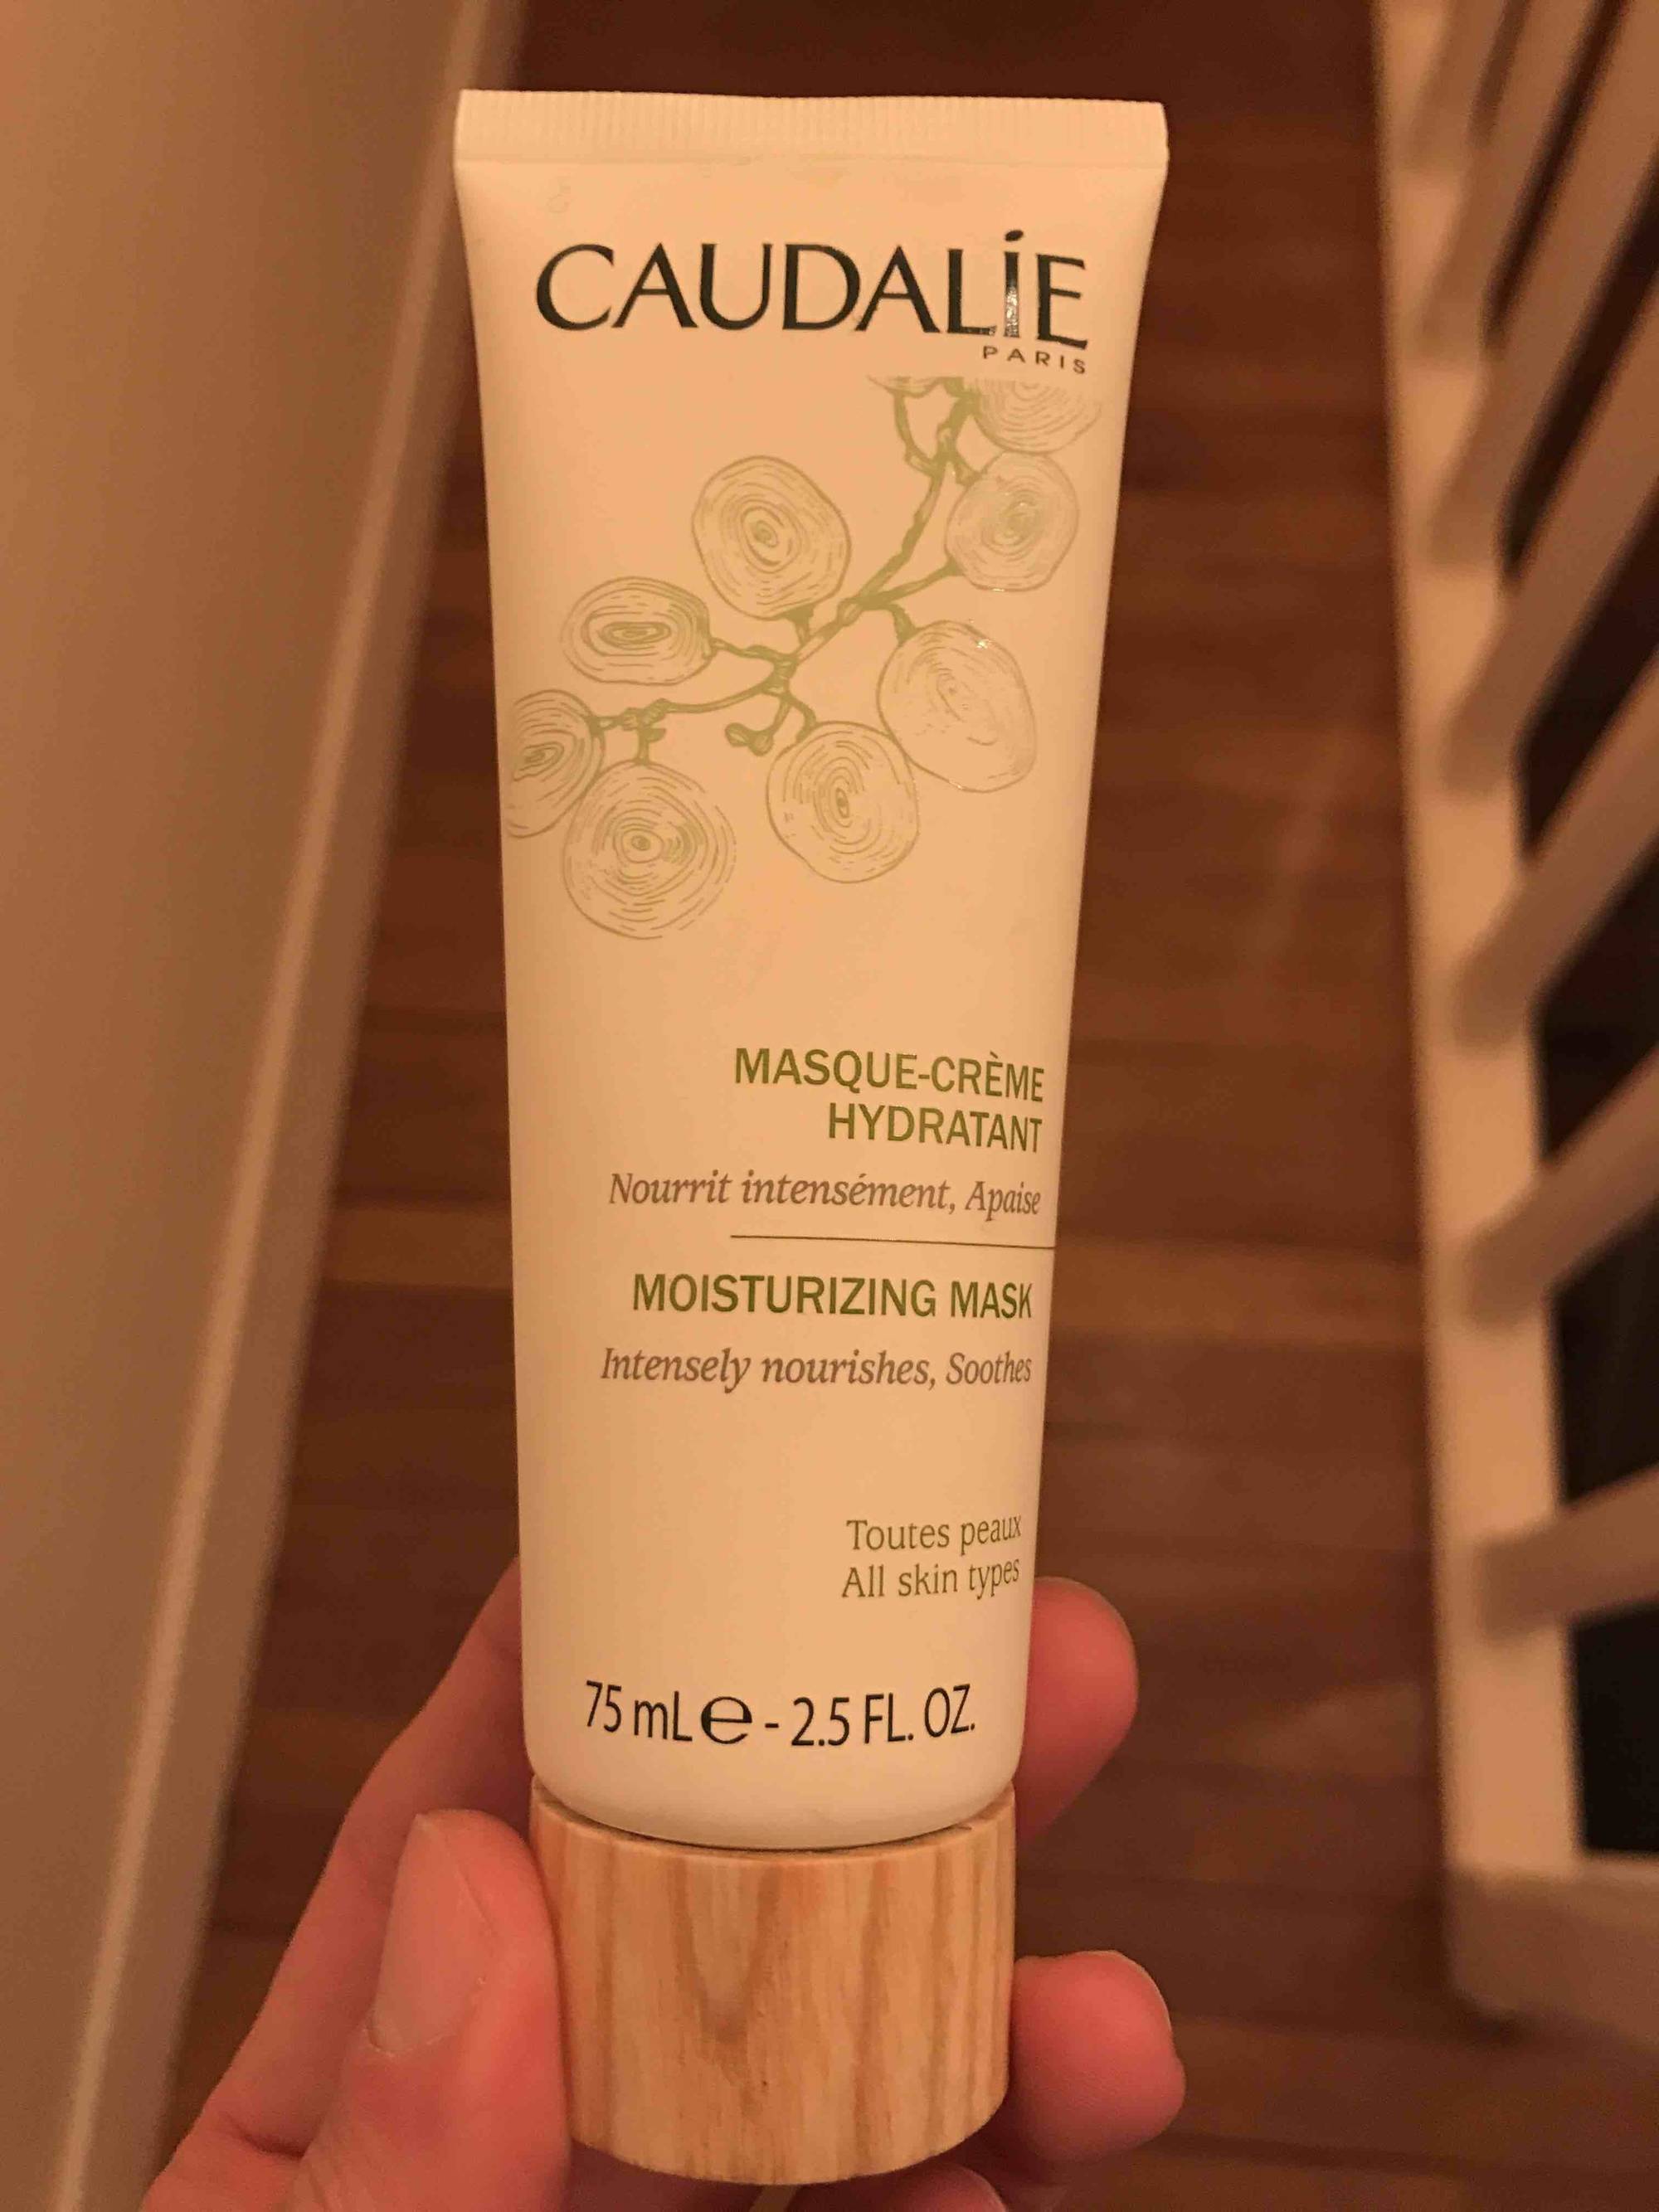 CAUDALIE - Masque-crème hydratant